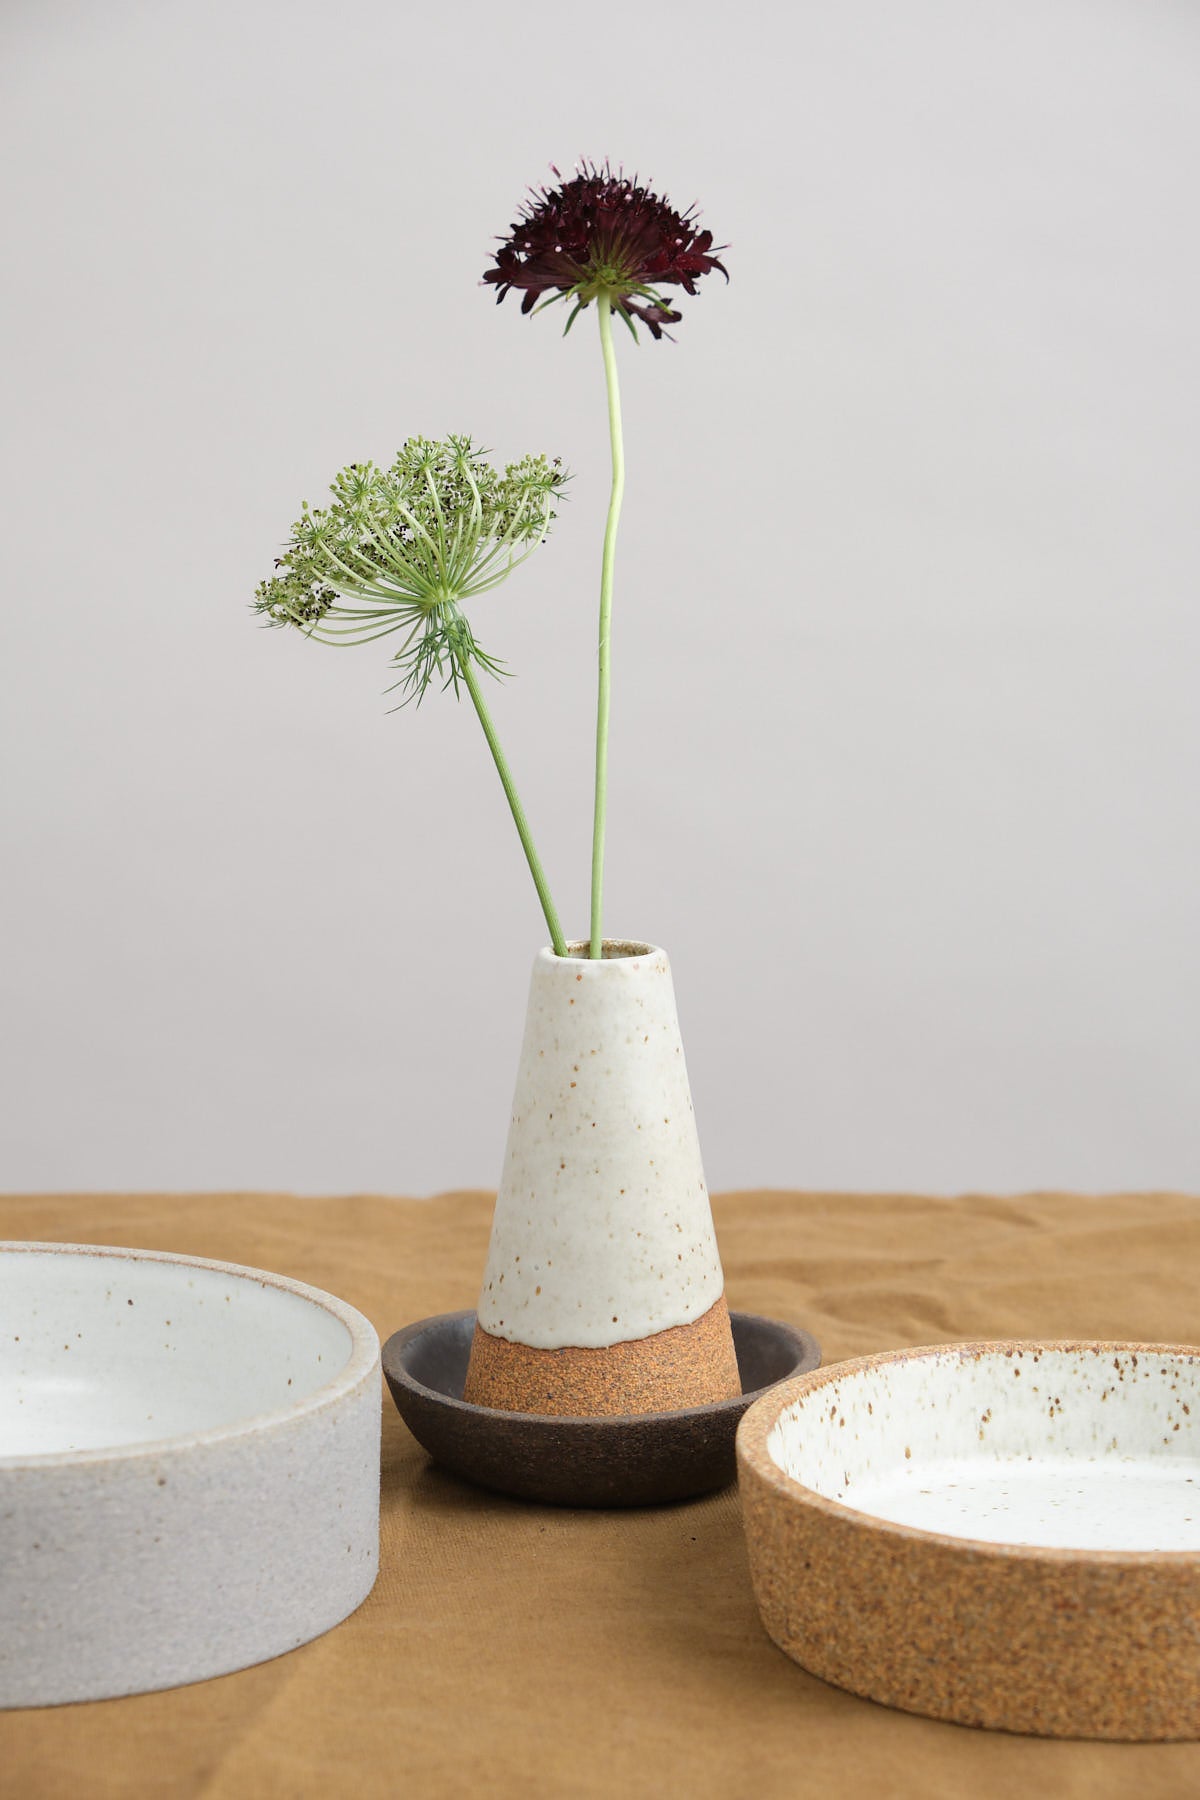 Humble Ceramics Mudra Vase in Sandstone/Snow White